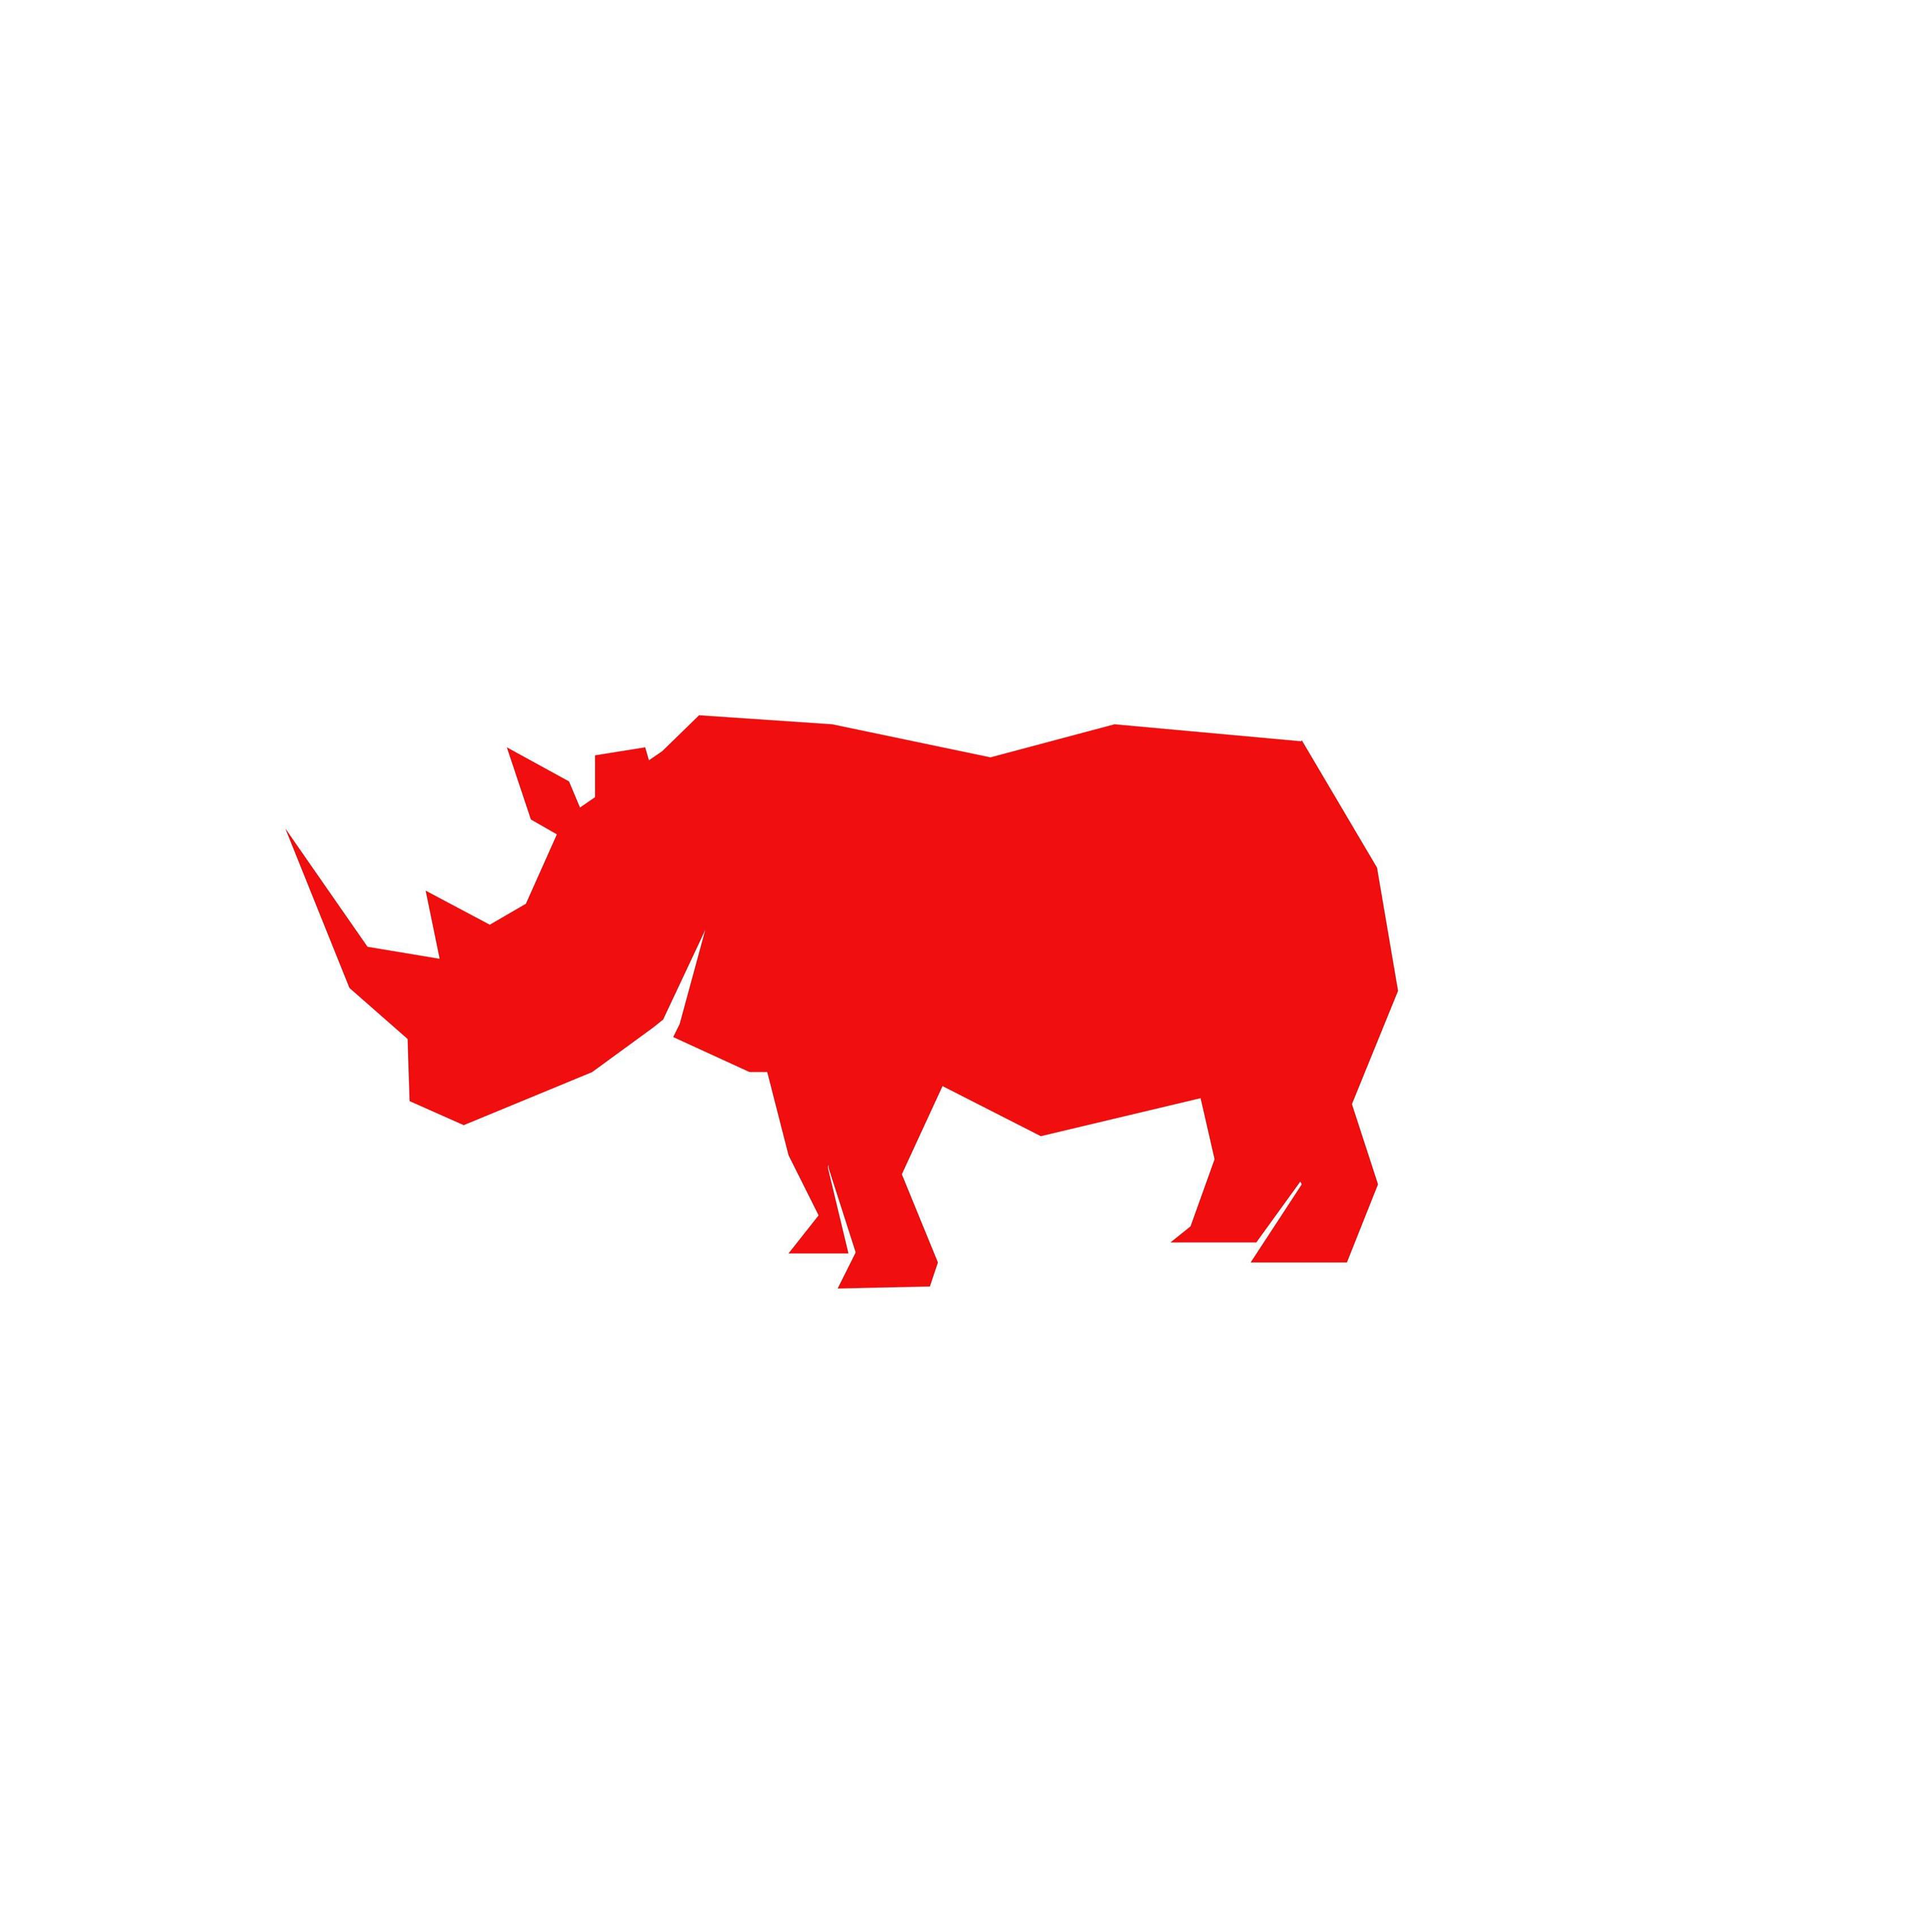 Rhino Shrink Wrap